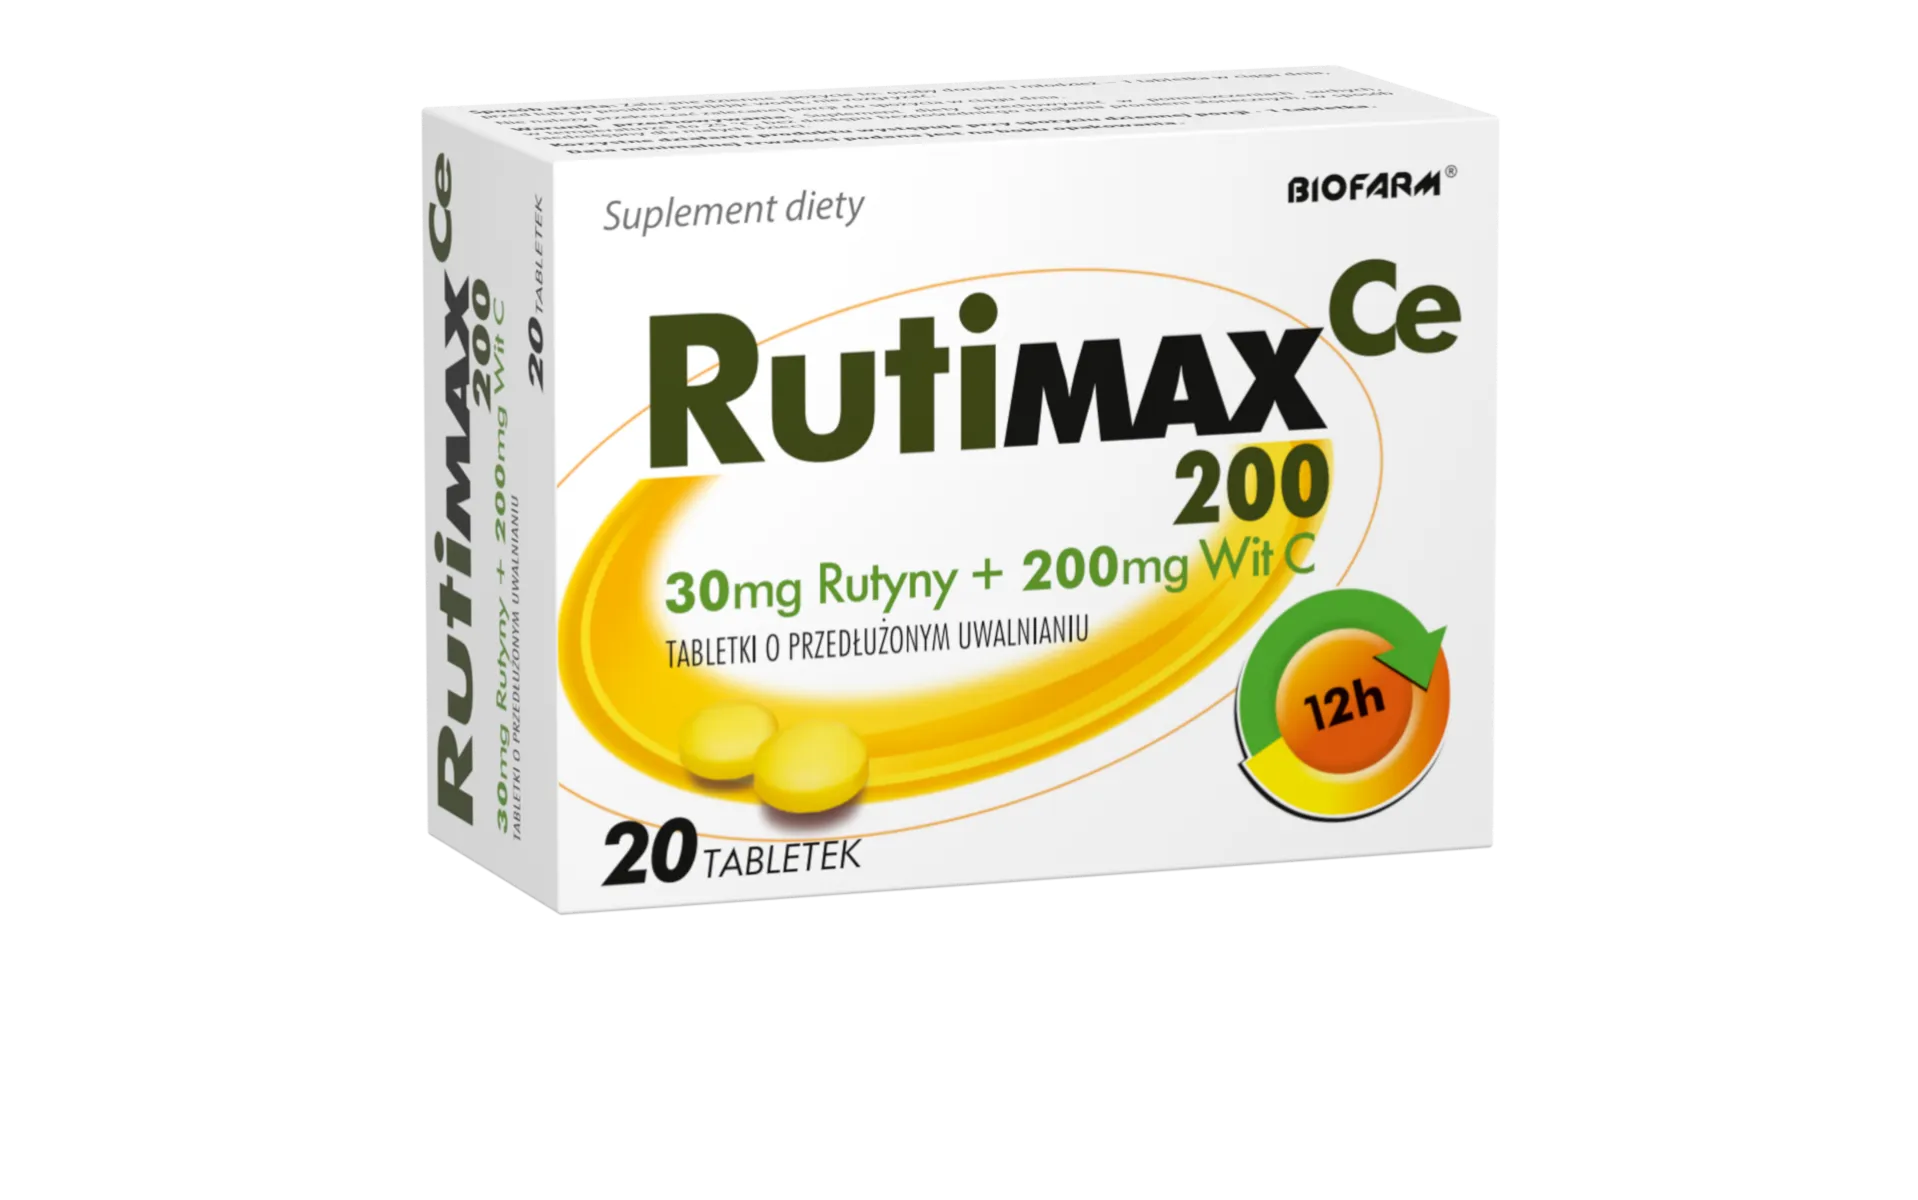 RutiMax Ce 200, suplement diety, 20 tabletek o przedłużonym uwalnianiu